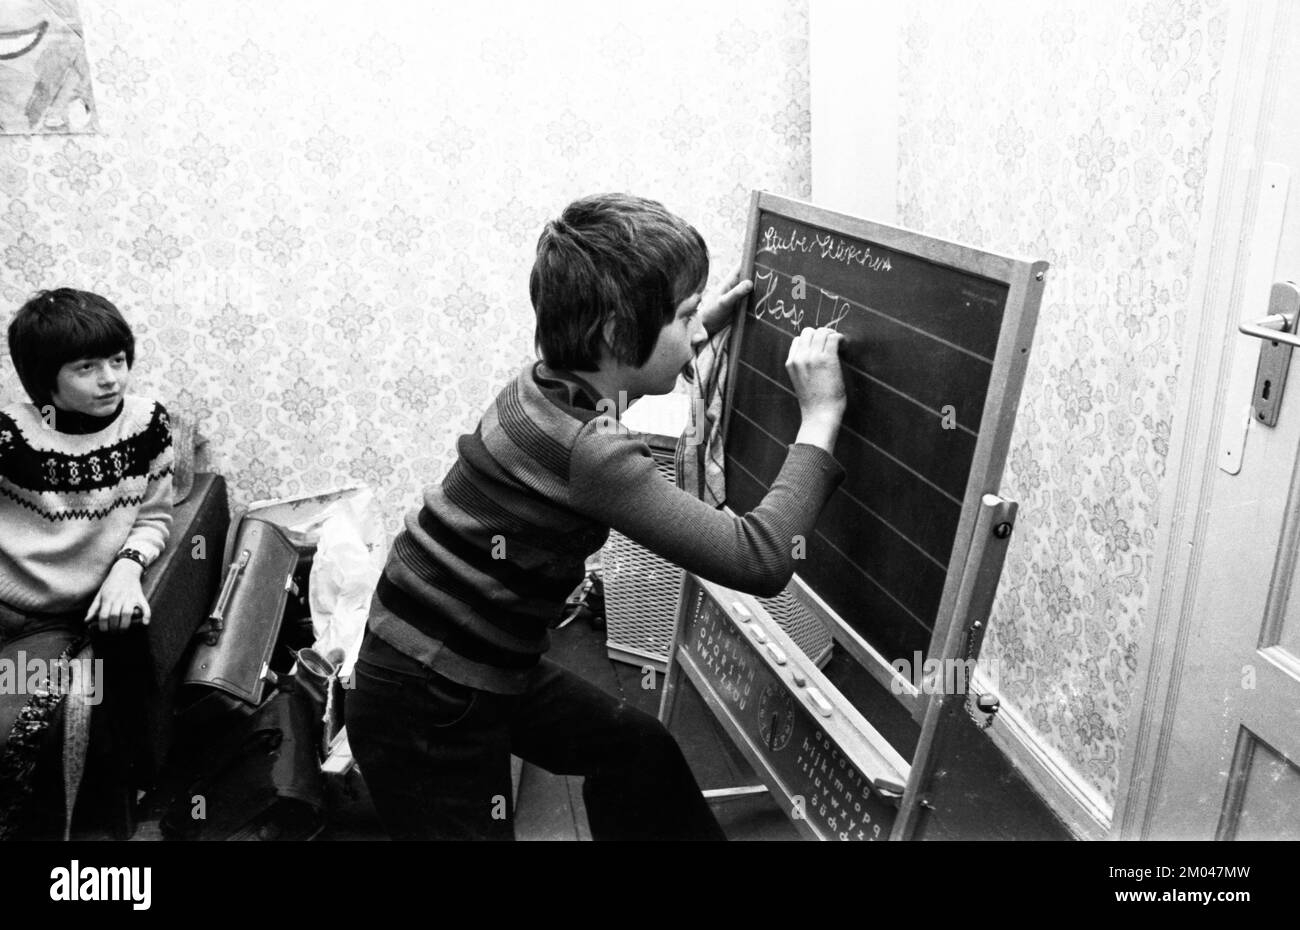 Privatunterricht für Lernbehinderte in einer Nachmittagsschule am 3.02.1975 in Bottrop, Deutschland, Europa Stockfoto